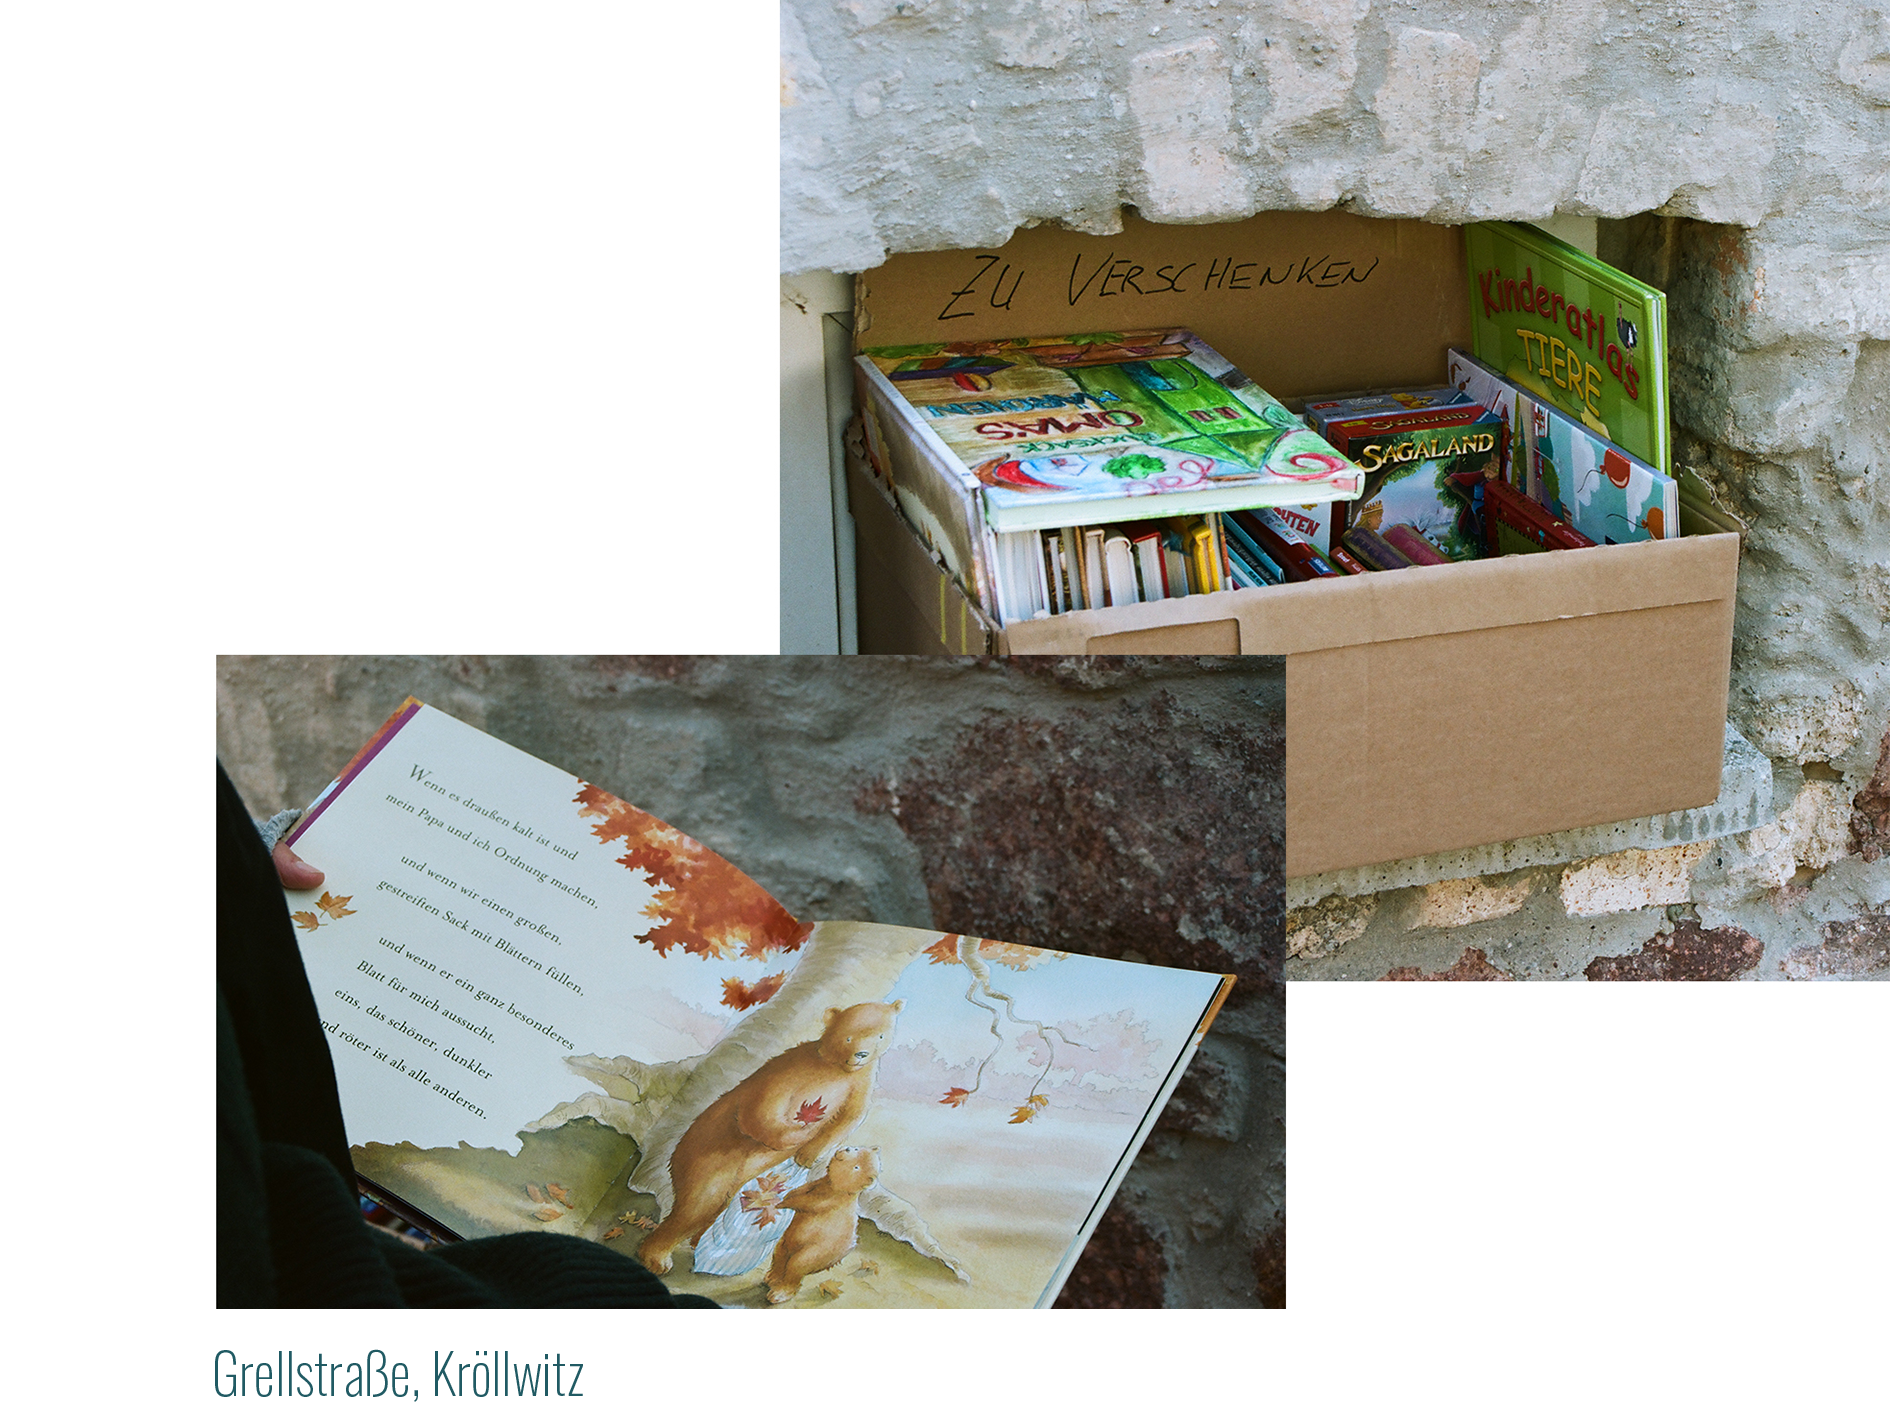 In Kontrast zu Grellstraße, Kröllwitz -
            Bild 1: Auf einem Mauervorsprung steht eine Karton mit Kinderbüchern und der Aufschrift „Zu Verschenken“.
            Bild 2: Eine Person hält ein aufgeschlagenes Kinderbuch in den Händen. Darin wird die Geschichte eines kleinen Bären und seinen Eltern erzählt. 
            